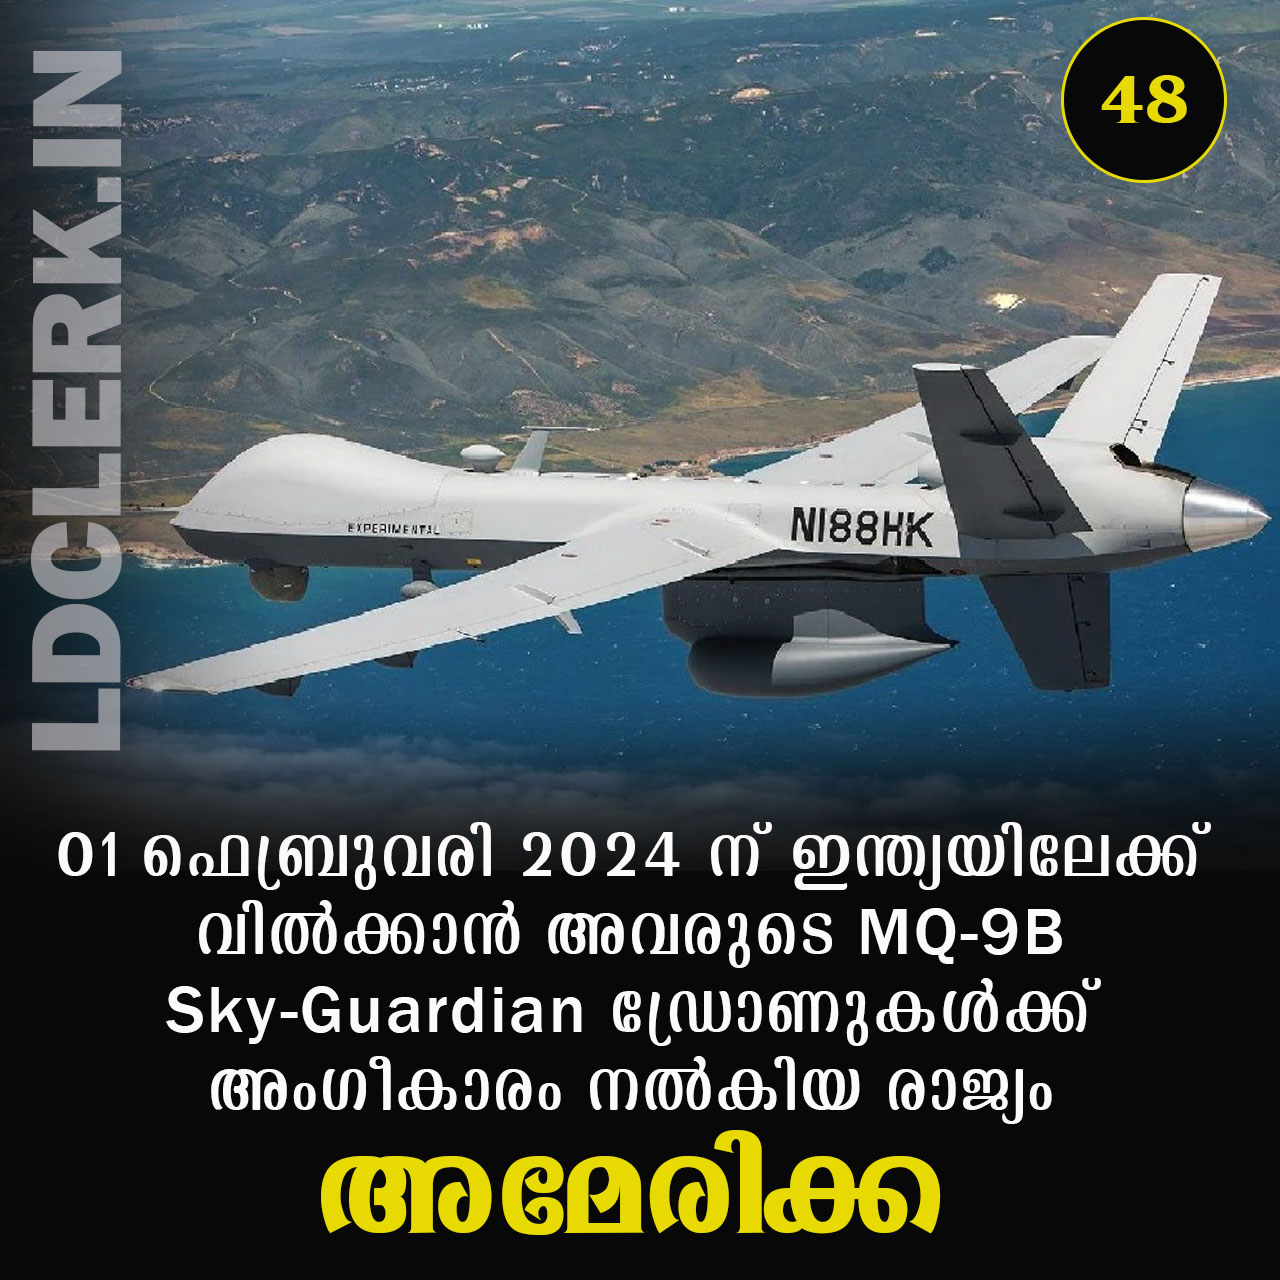 MQ-9B Sky-Guardian drone